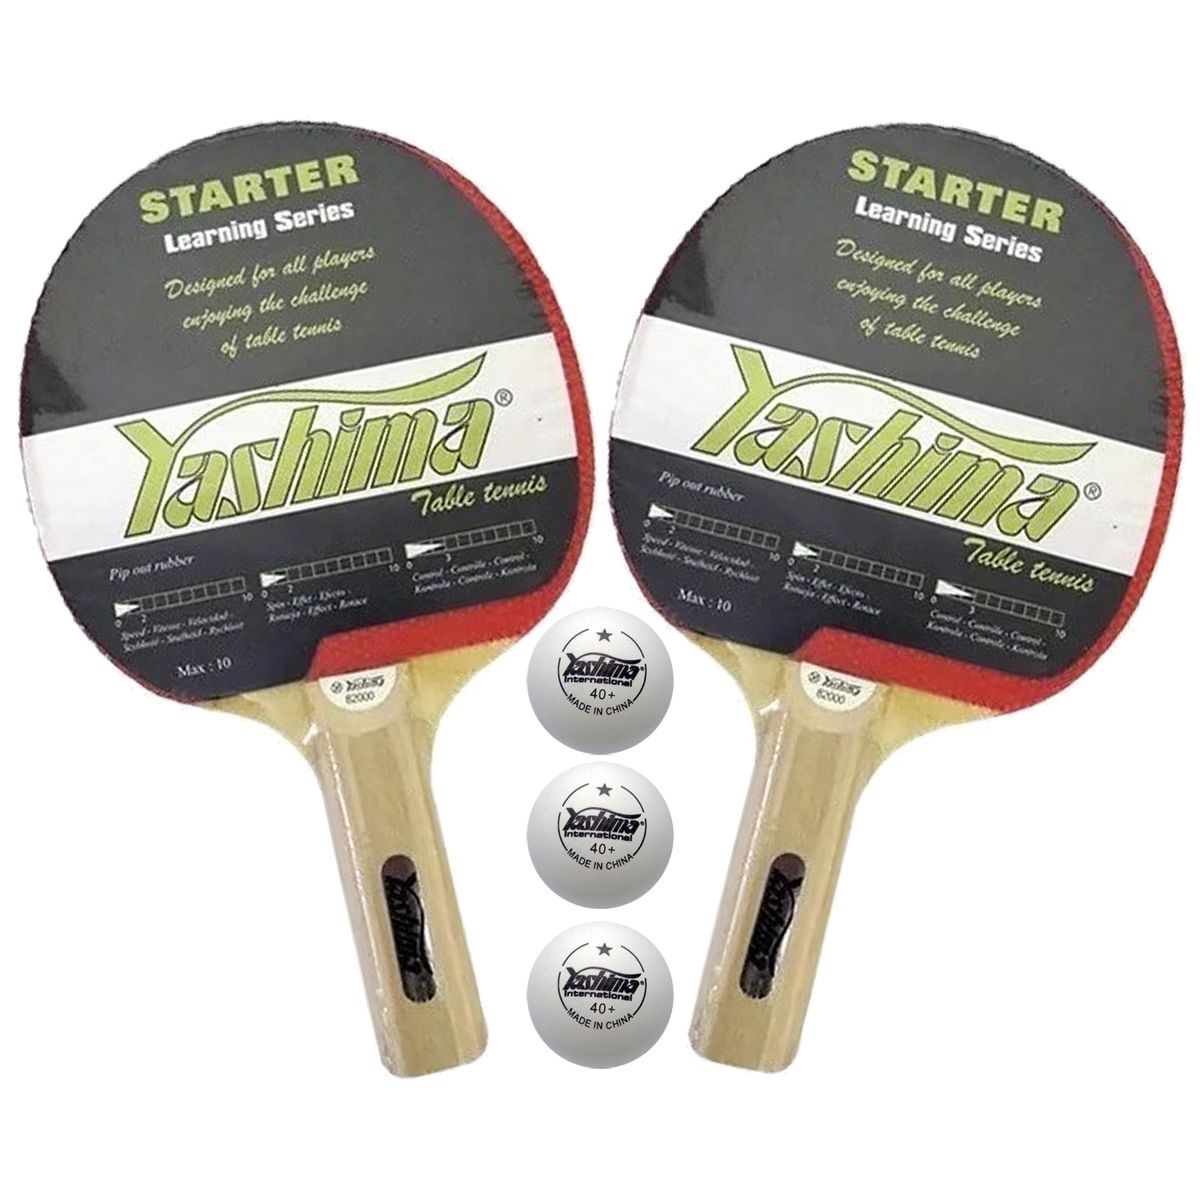 Kit Tenis de Mesa Yashima Starter Learning Series